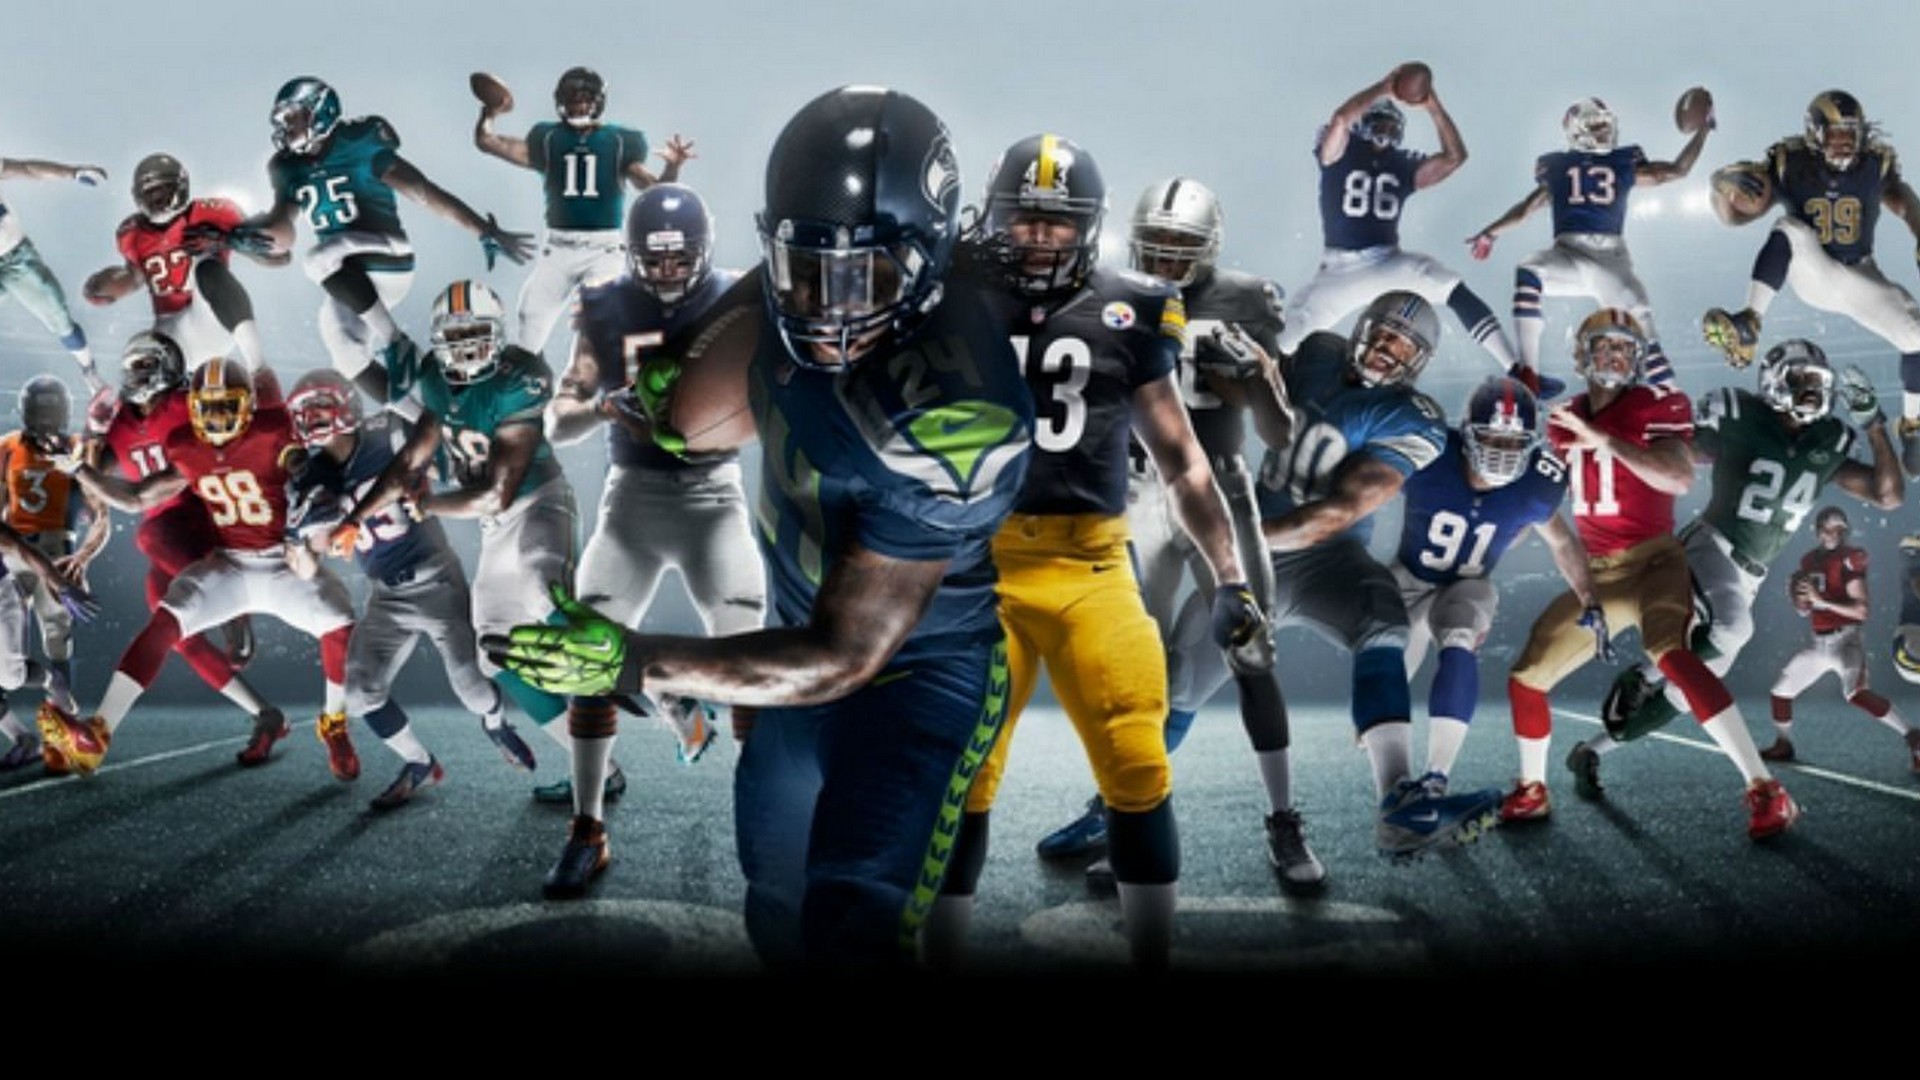 Preparen sus consolas: Uniformes y festejos de la NFL llegarán al Fortnite